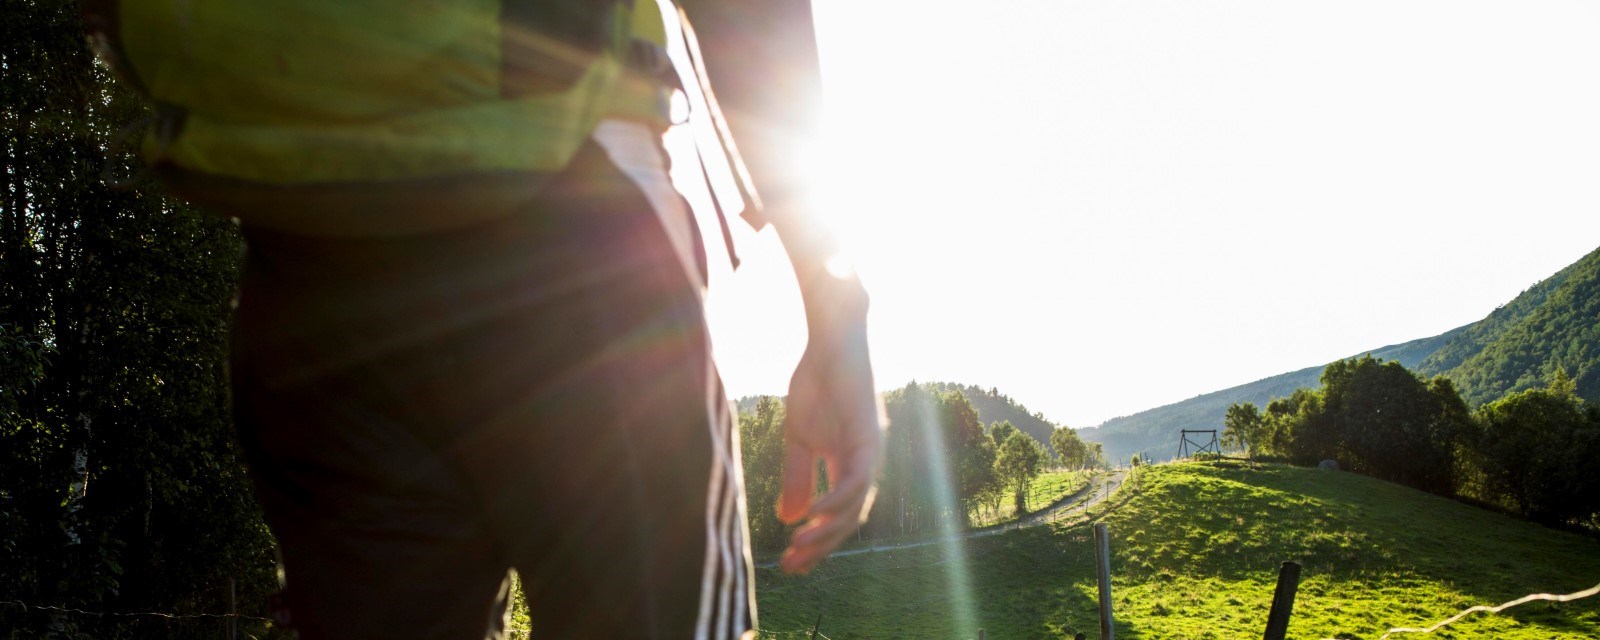 Bildet viser et menneske i kortbukse bakfra, som går i naturen i skinnende sol.